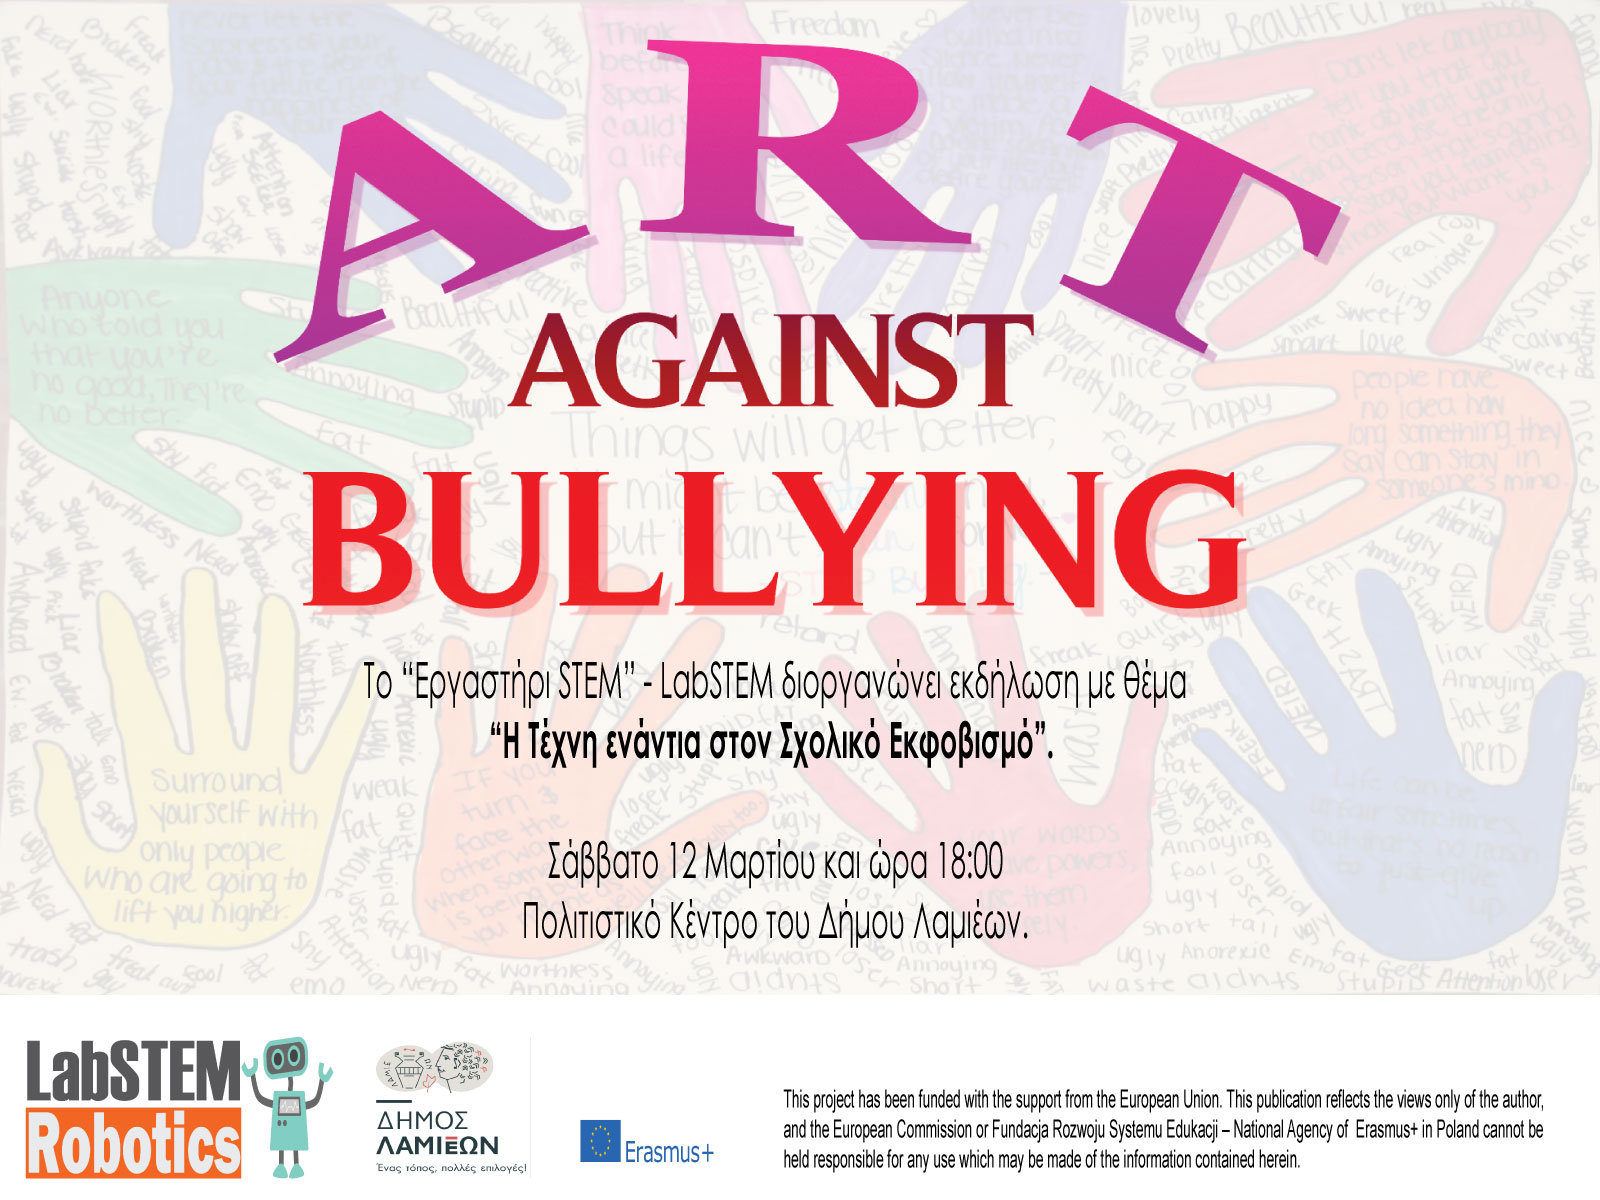 Εκδήλωση: “Η Τέχνη ενάντια στο Σχολικό Εκφοβισμό” (Art Against Bullying)